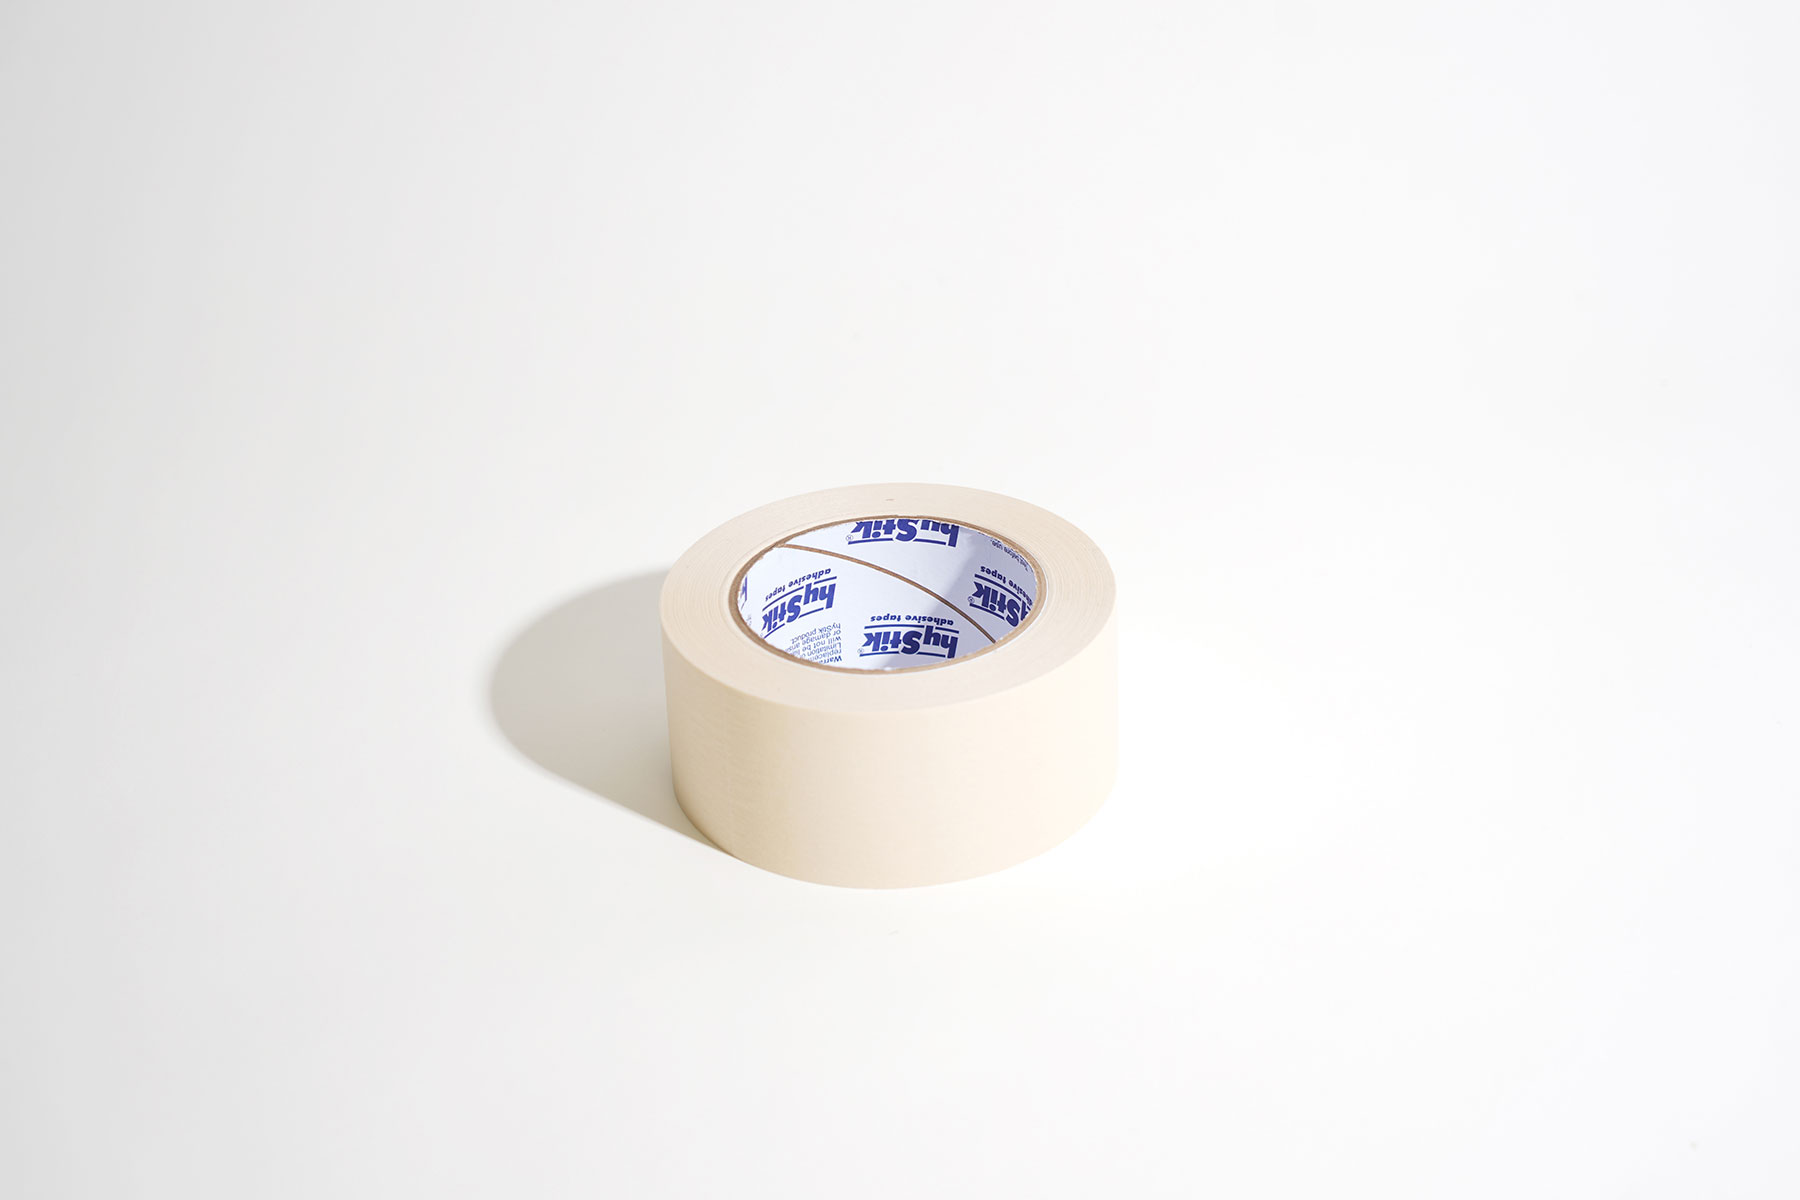             Crepe tape 50mm x 50m in cream
        